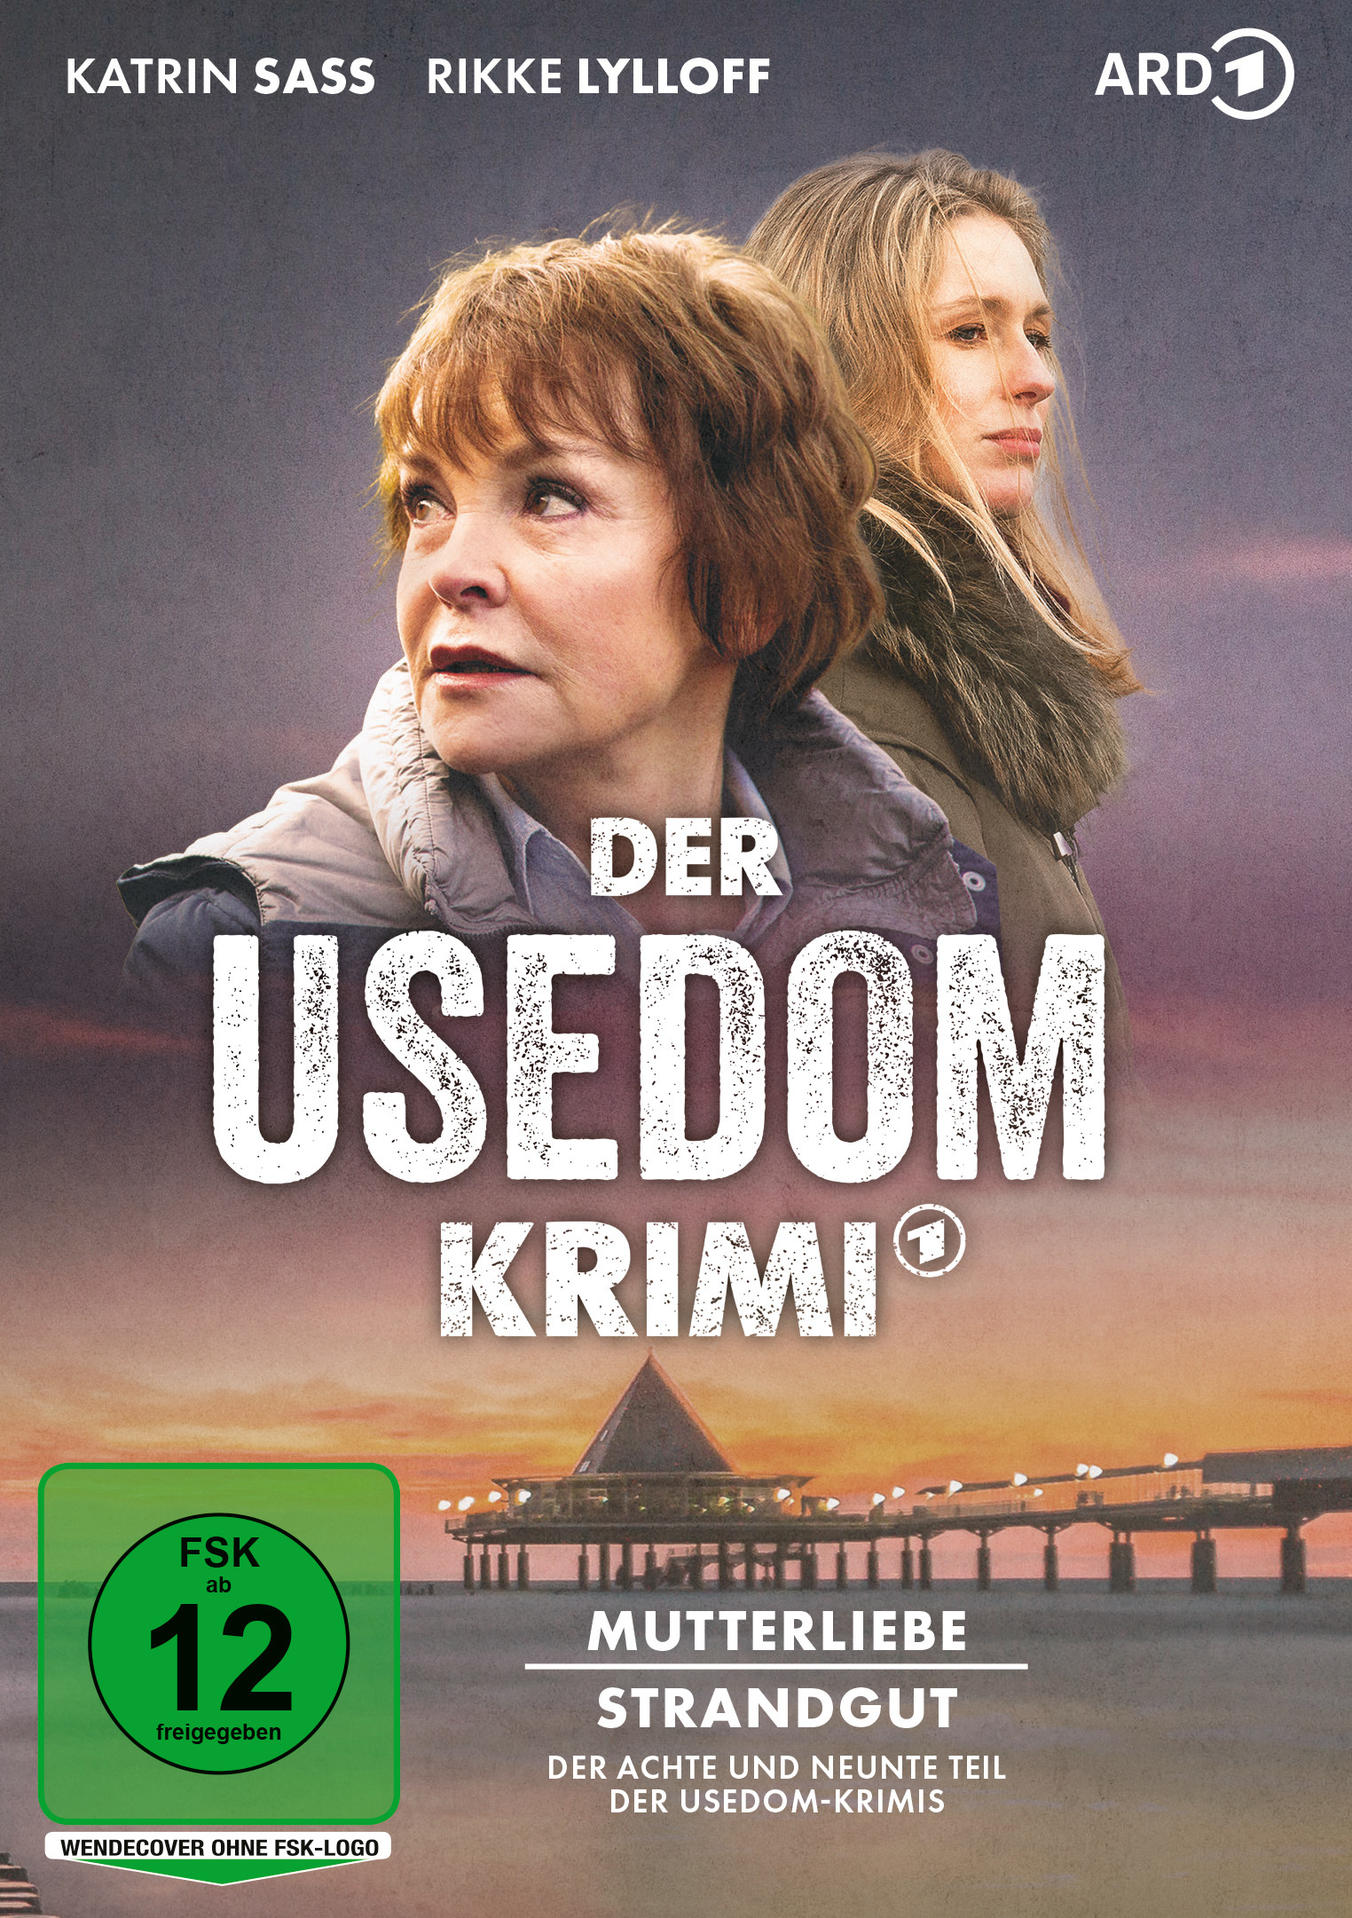 Der Usedom-Krimi: / DVD Strandgut Mutterliebe